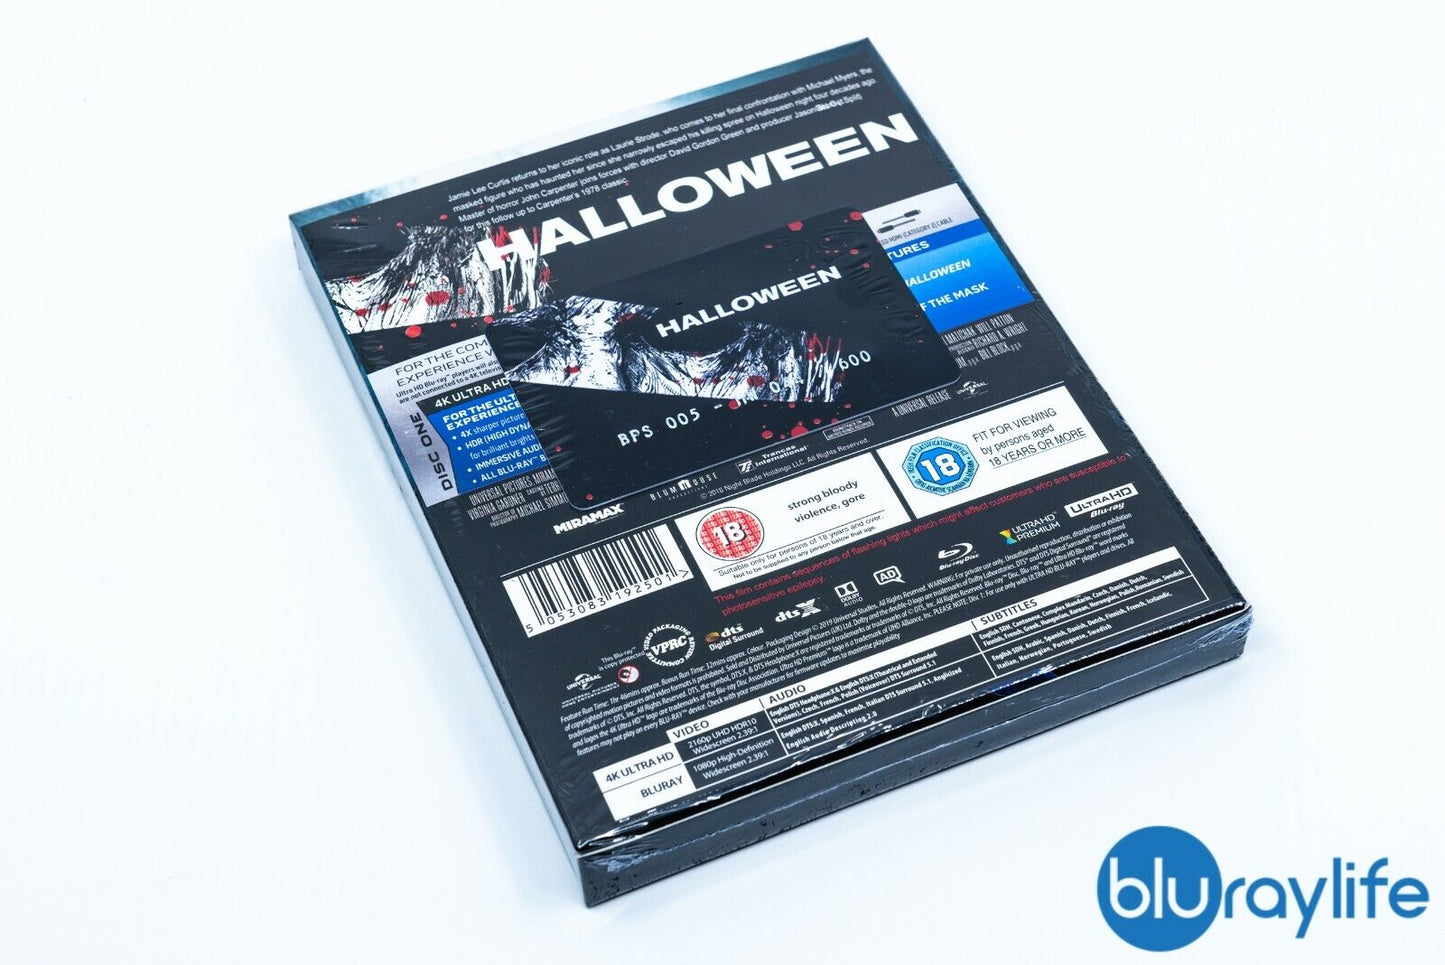 Halloween (2018) 4K + Bonus Blu-ray Steelbook EverythingBlu BPS#005 Exclusive Full Slip